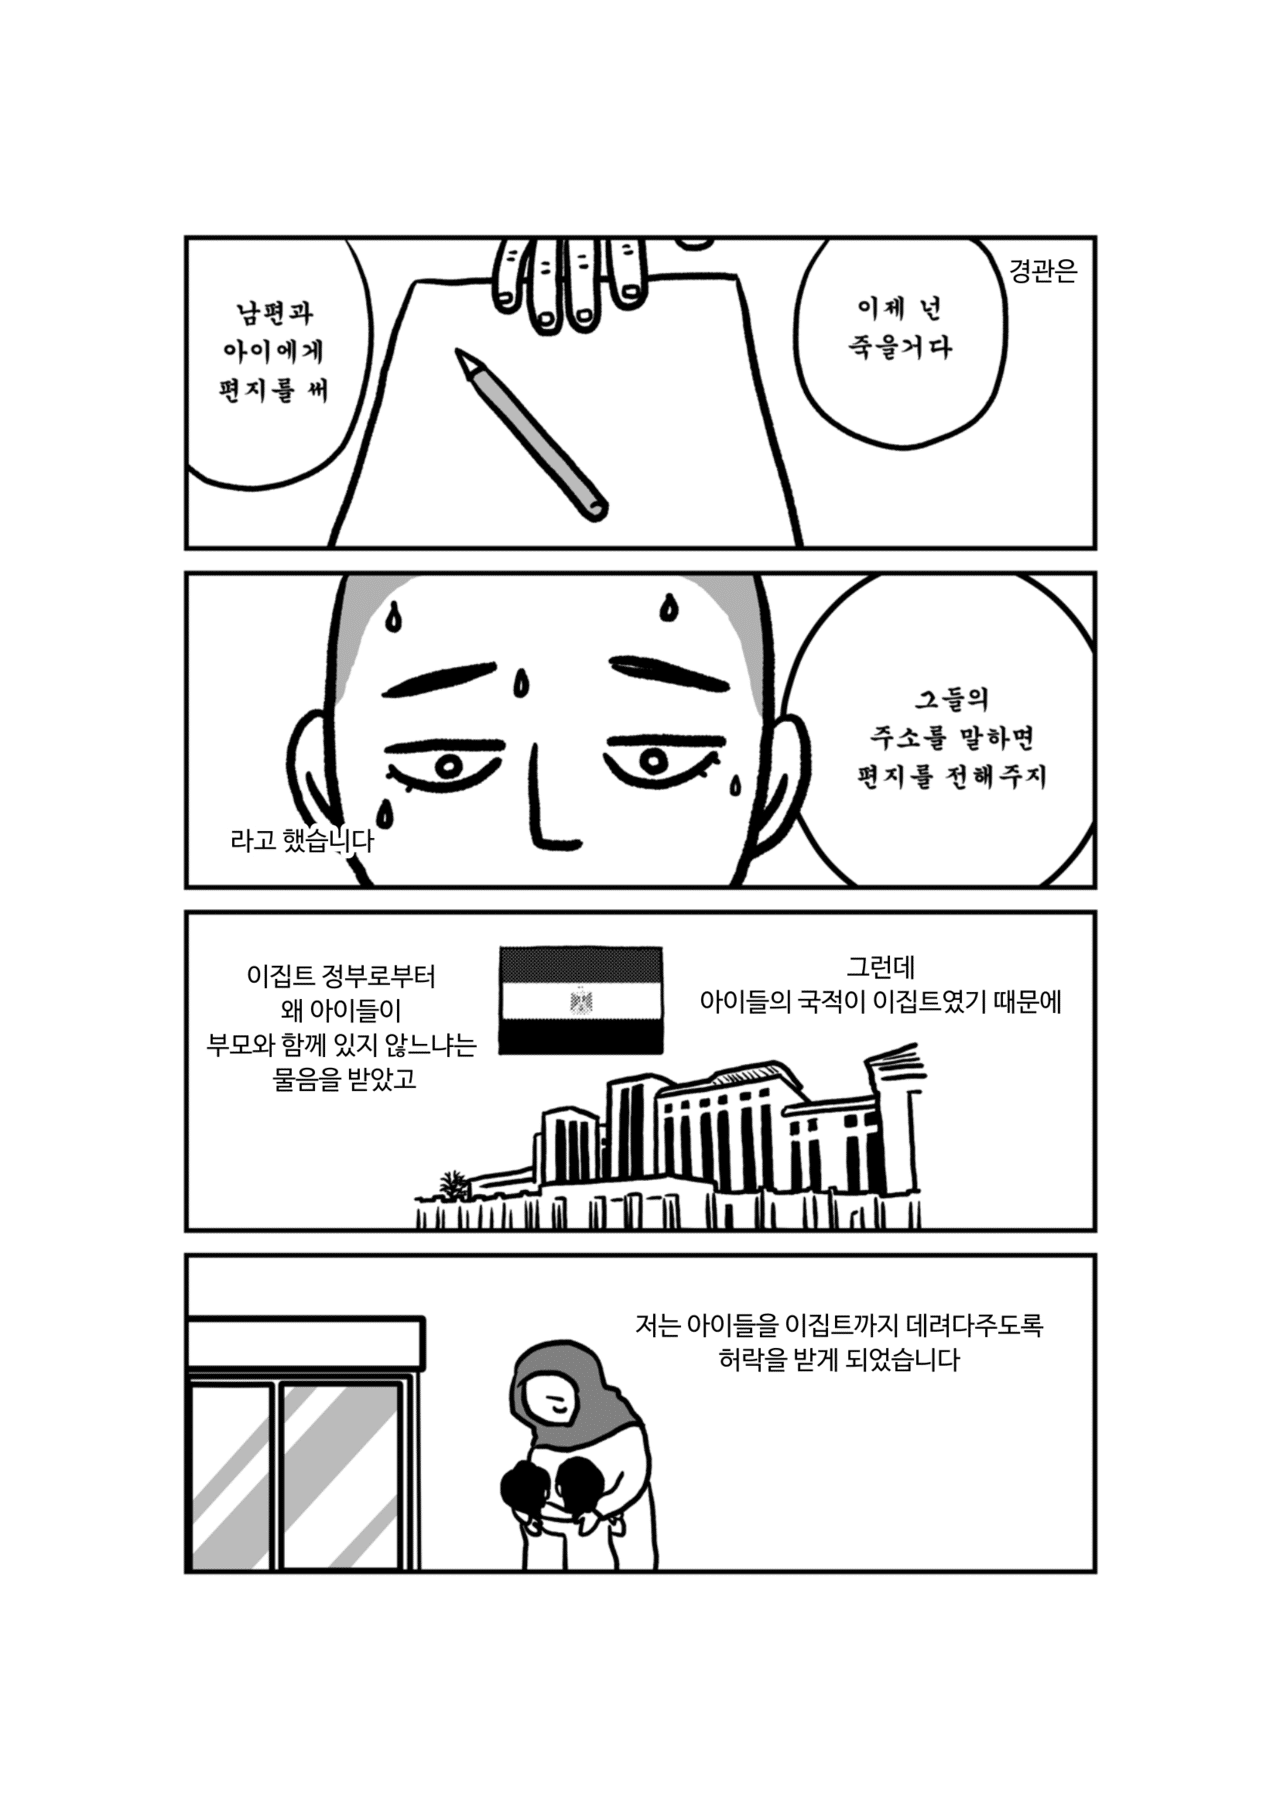 私の身に起きたこと韓国-11